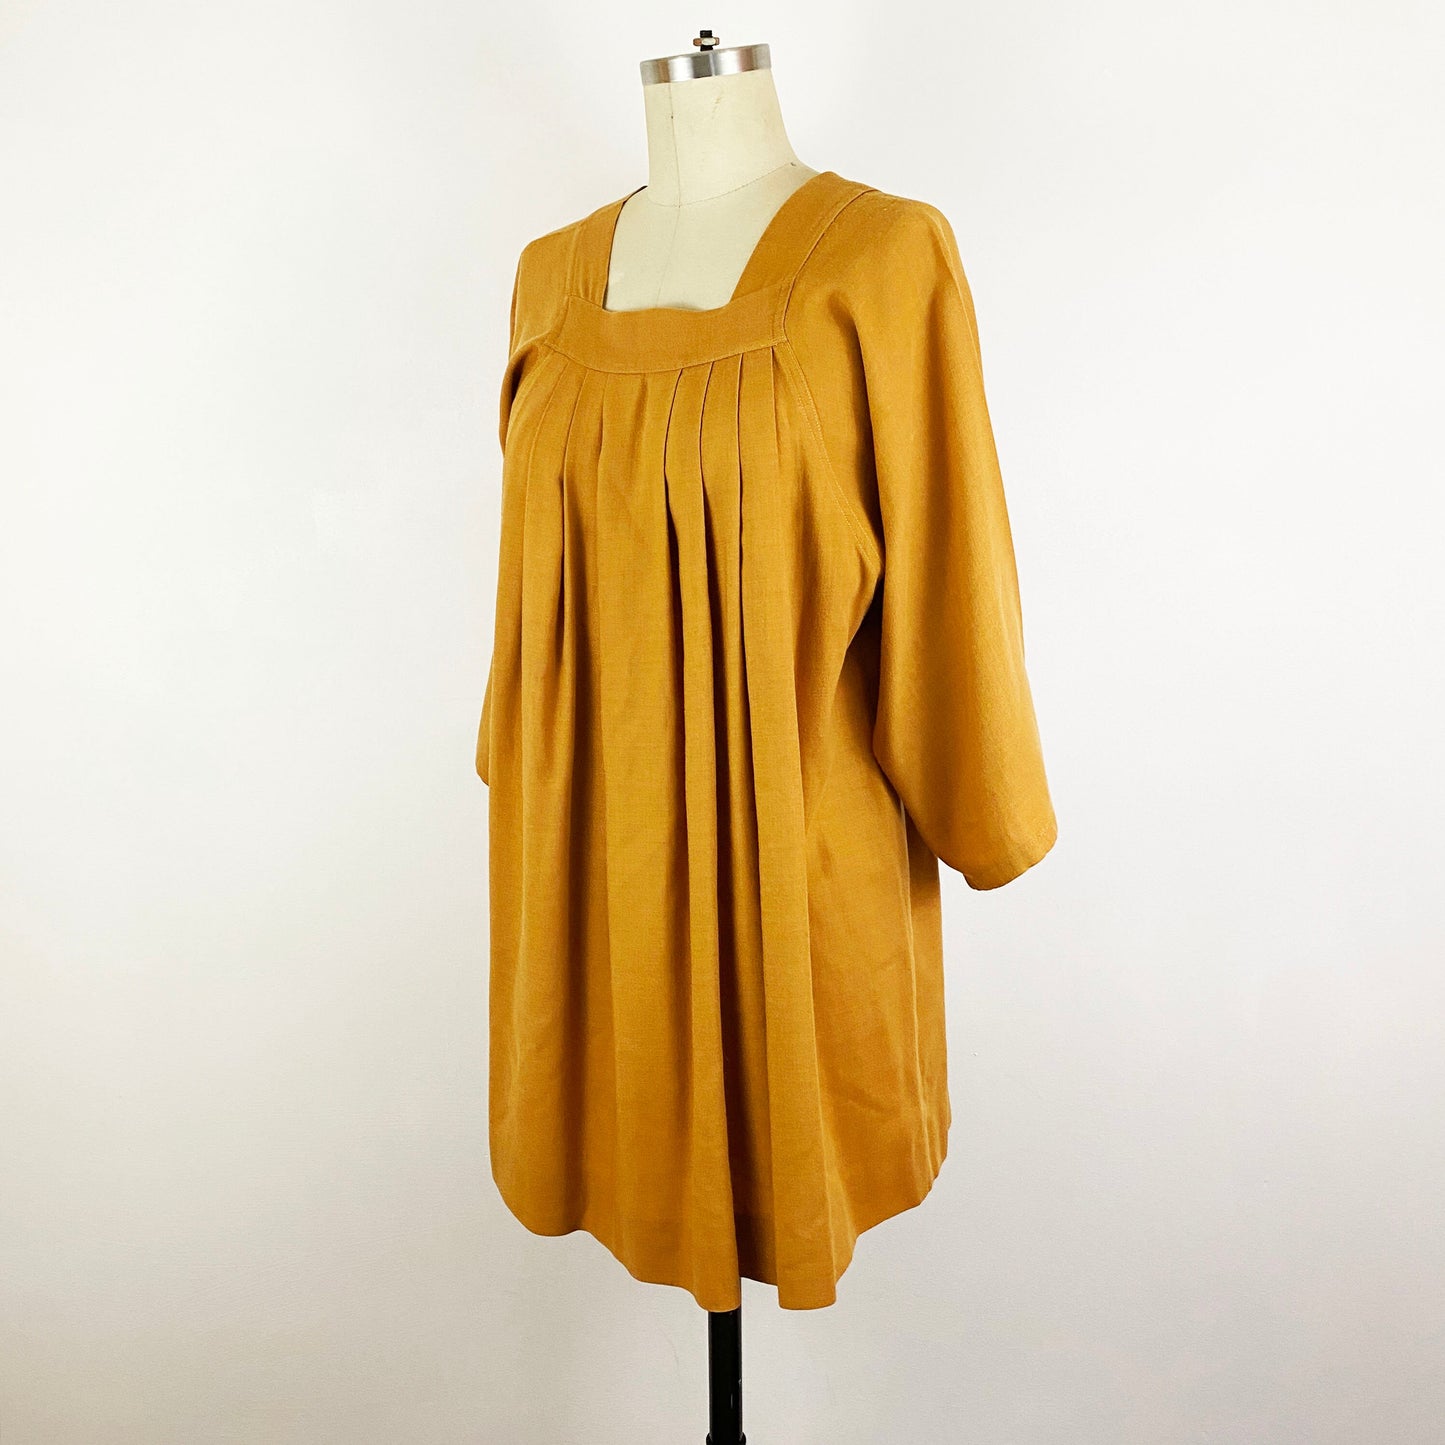 1970s Smocked Pleated Mini Dress Goldenrod Mustard Cotton Tunic 70s Boho Hippie Autumn Minimalist Kaftan / Ellen Lockwood / Size Medium